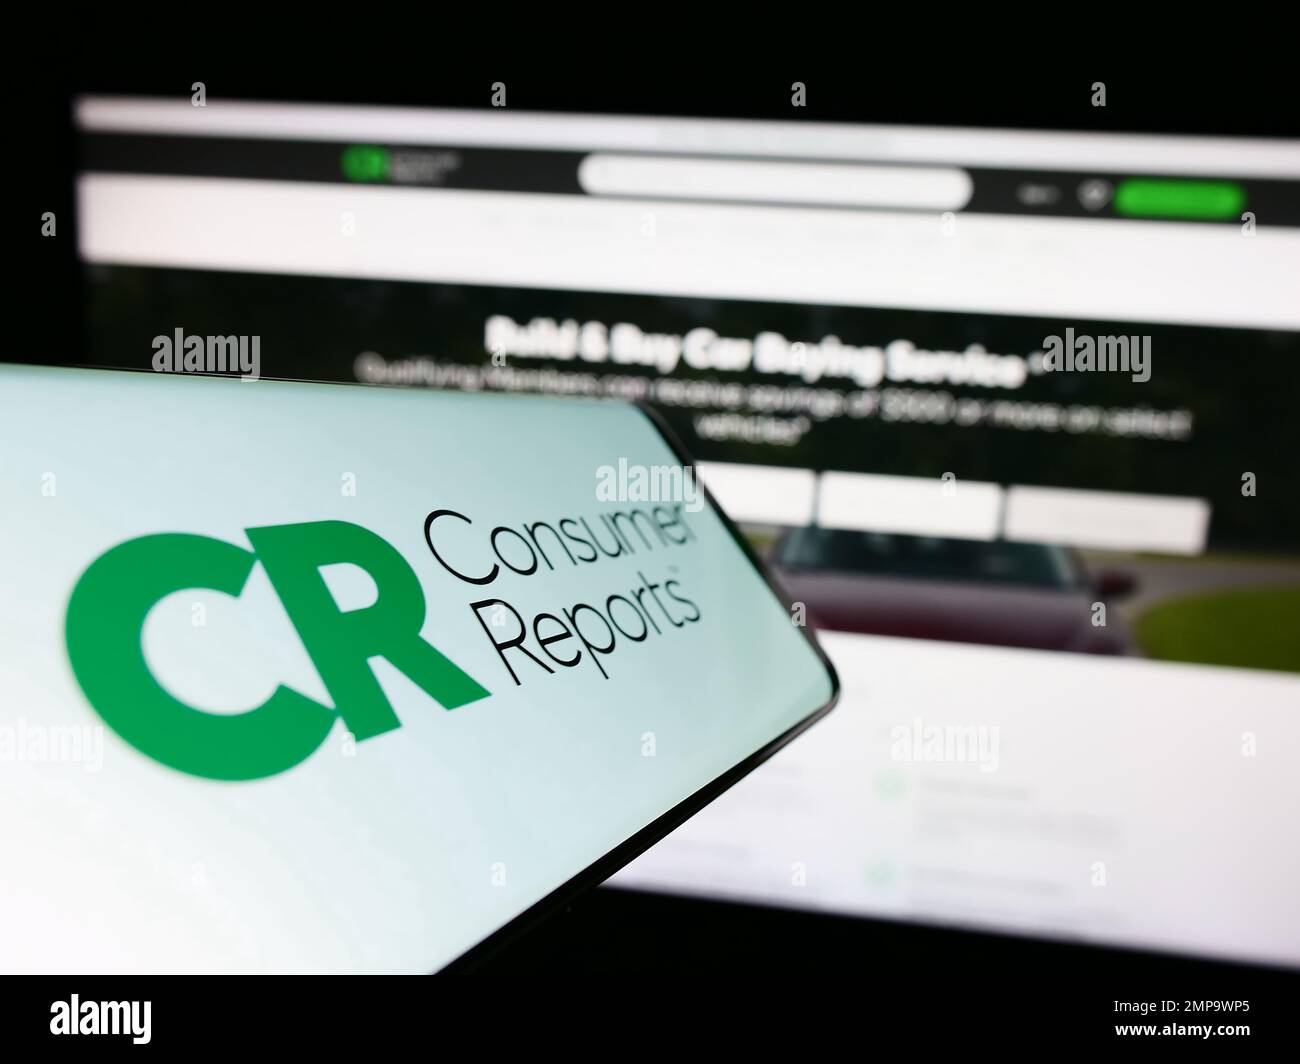 Cellulare con il logo dell'organizzazione americana Consumer Reports (CR) sullo schermo di fronte al sito web. Messa a fuoco al centro del display del telefono. Foto Stock